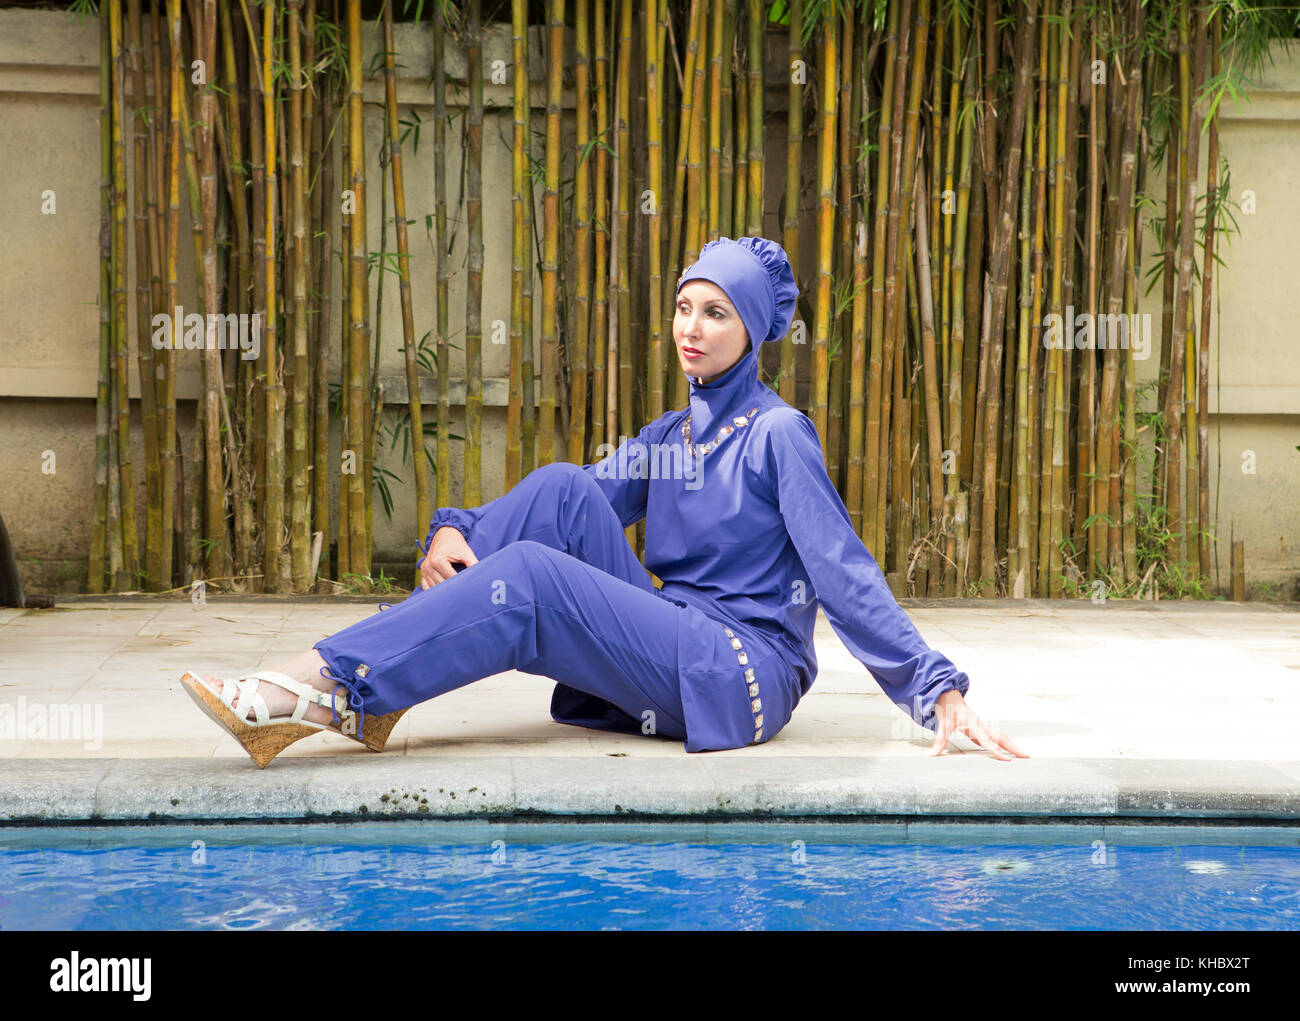 Attraktive Frau in eine muslimische Bademode Burkini im Schwimmbad  Stockfotografie - Alamy